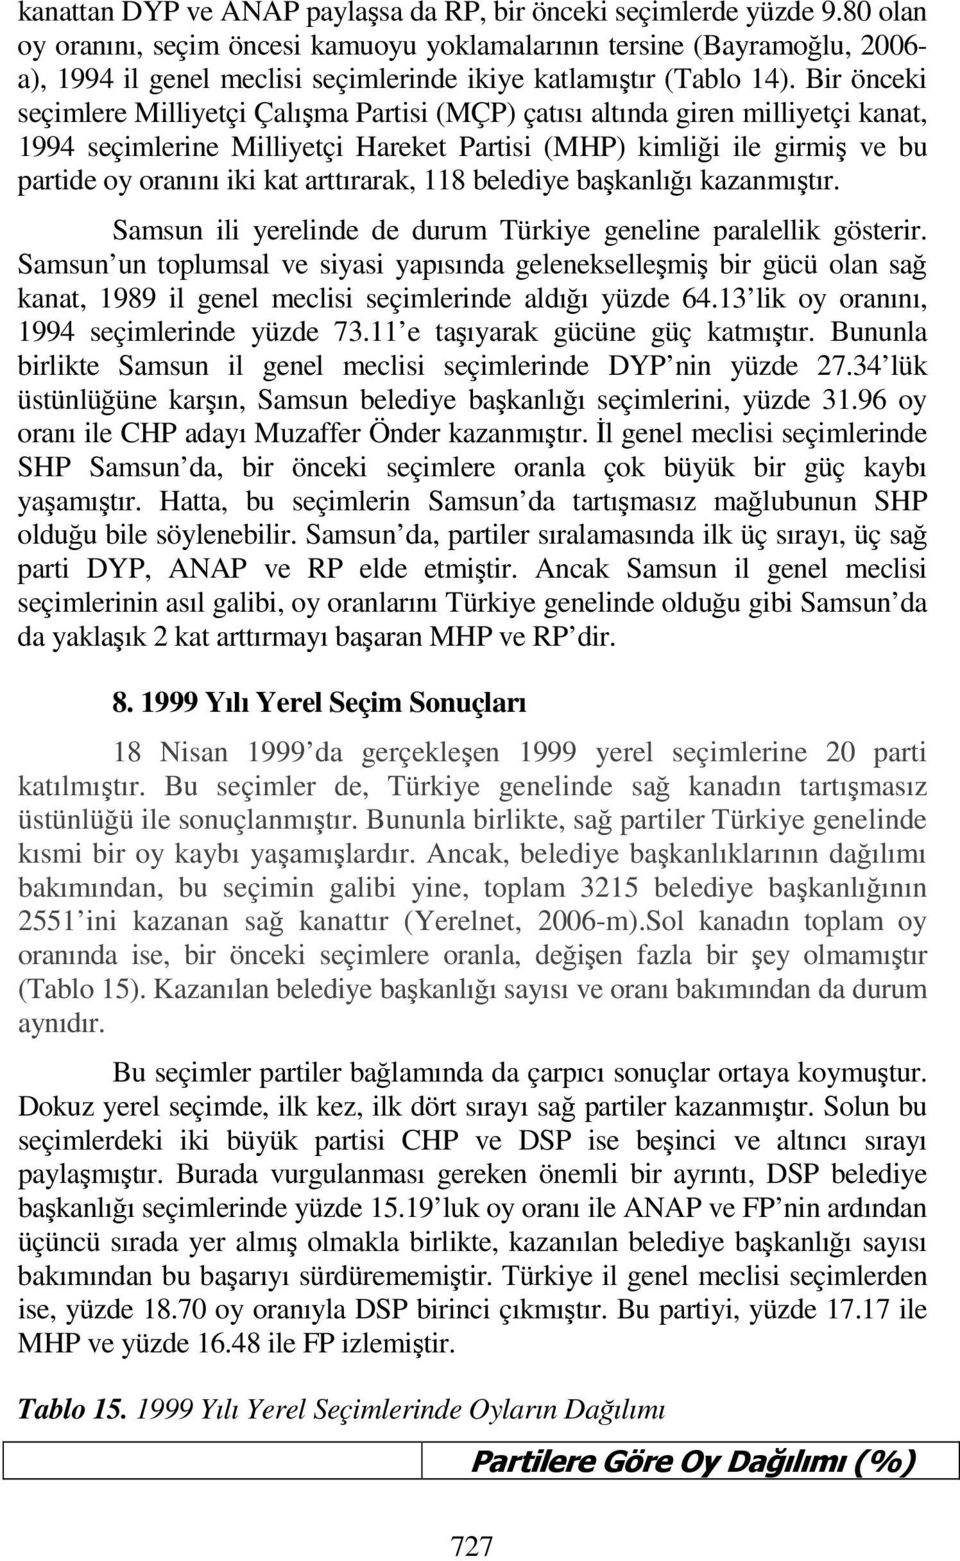 Bir önceki seçimlere Milliyetçi Çalışma Partisi (MÇP) çatısı altında giren milliyetçi kanat, 1994 seçimlerine Milliyetçi Hareket Partisi (MHP) kimliği ile girmiş ve bu partide oy oranını iki kat